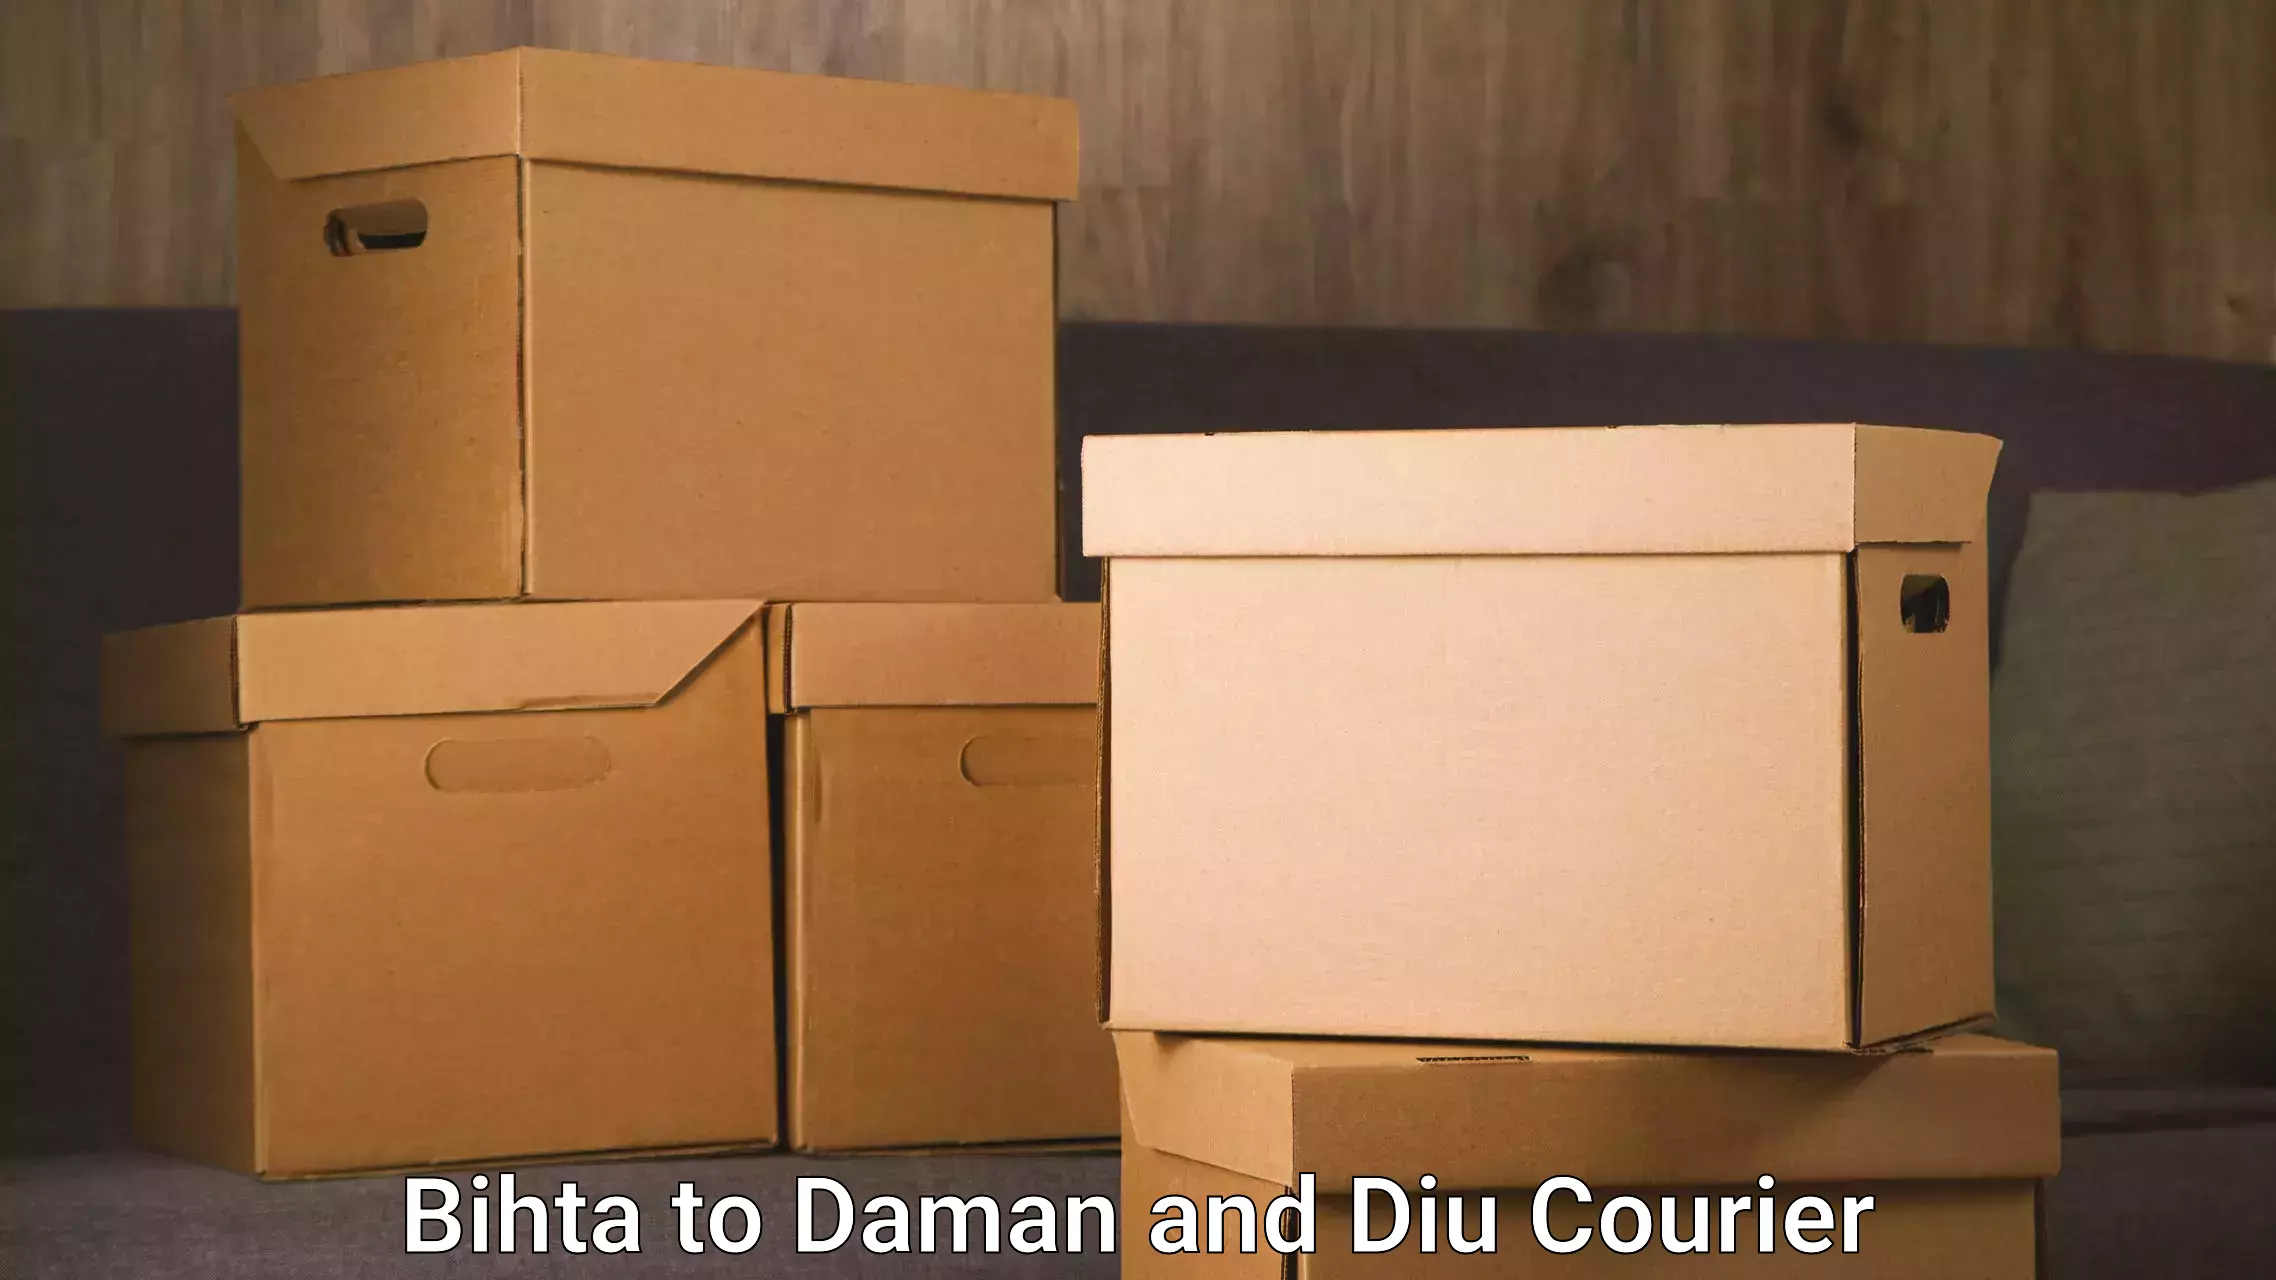 Furniture moving services Bihta to Diu